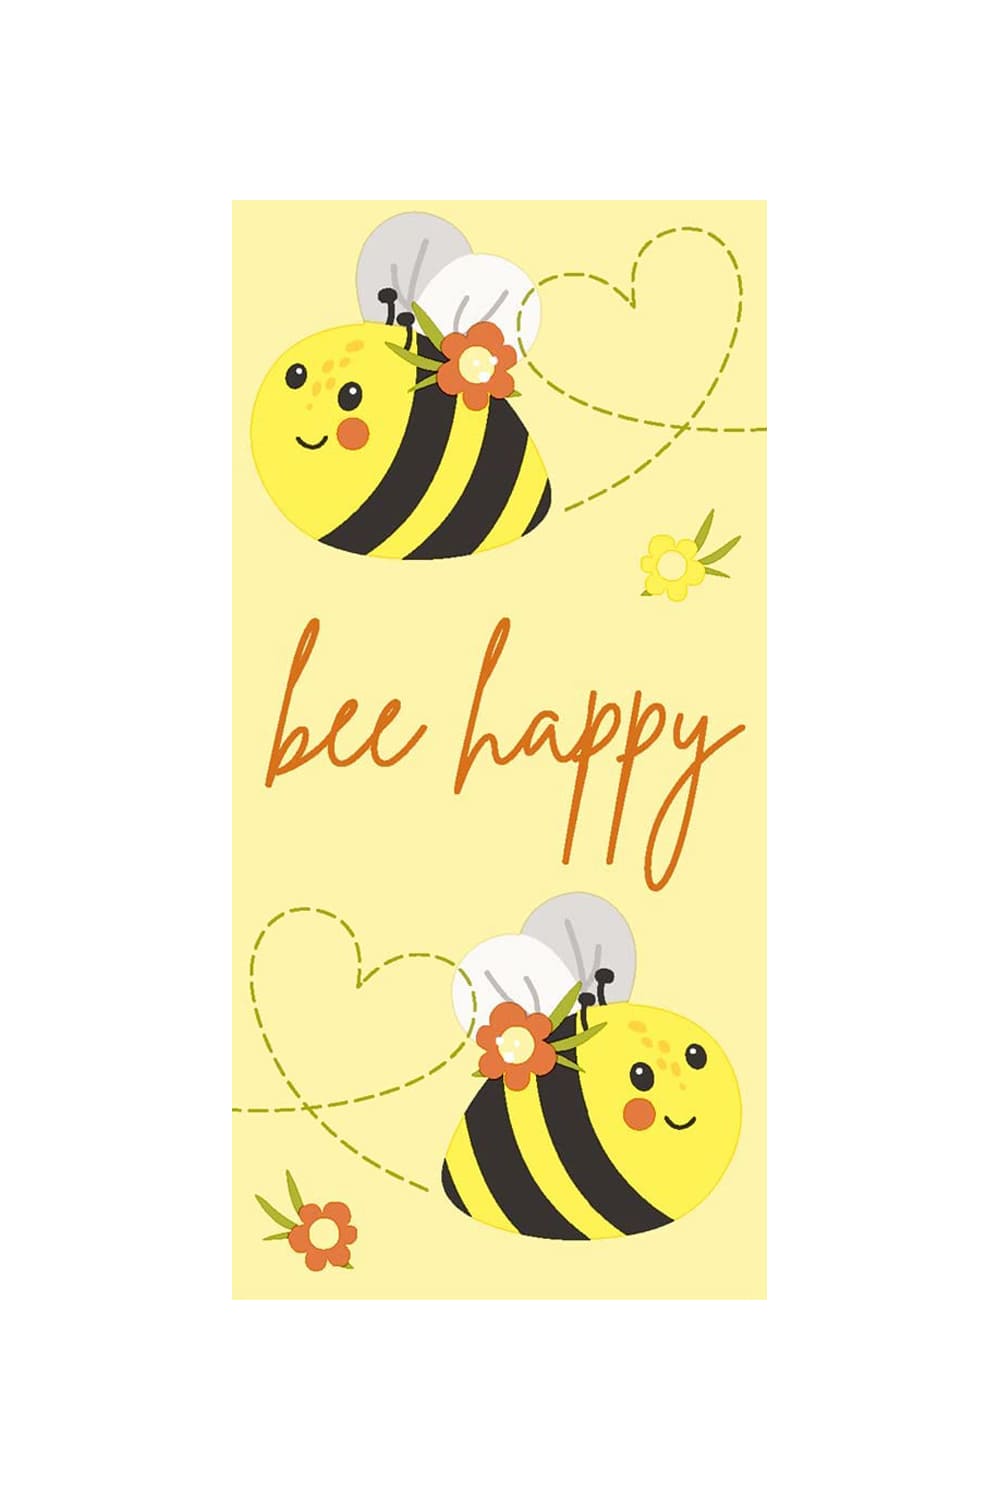 Diese witzigen Bee Happy Taschentuecher sorgen bestimmt fuer viel Freude. Diese Nasentuecher eignen sich auch als tolle Dekoration fuer das Bad oder fuer die Wohnung. Ein witziges Biene Geschenk oder Mitbringsel fuer jeden Anlass. Die Taschentuecher kann man auch in ein Gutschein Geschenk verwandeln. 